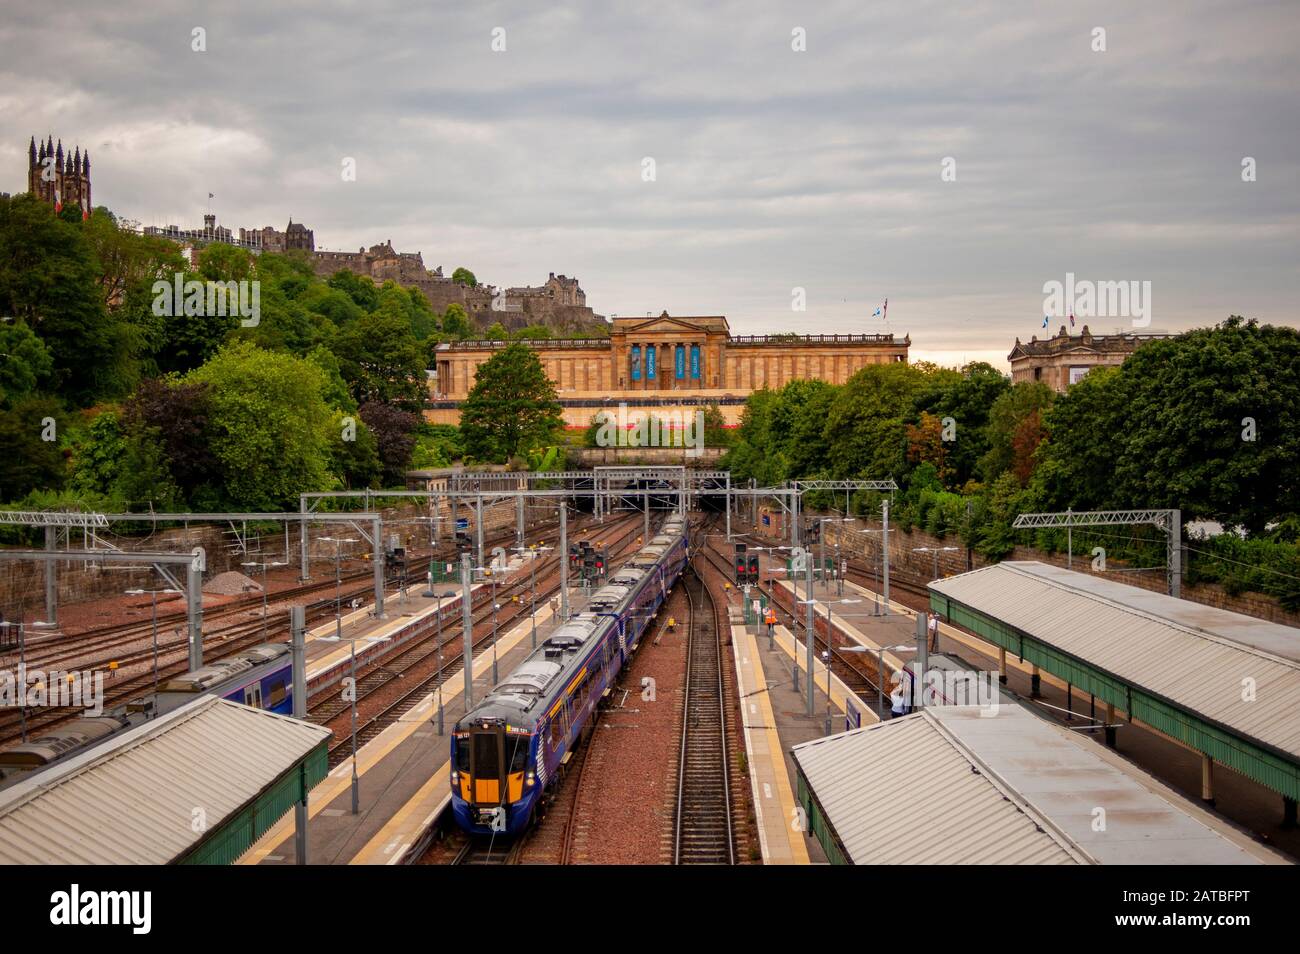 Galerie nationale écossaise vue de la gare de Waverley. Photographie de voyage/paysage urbain d'Édimbourg par Pep Masip. Banque D'Images